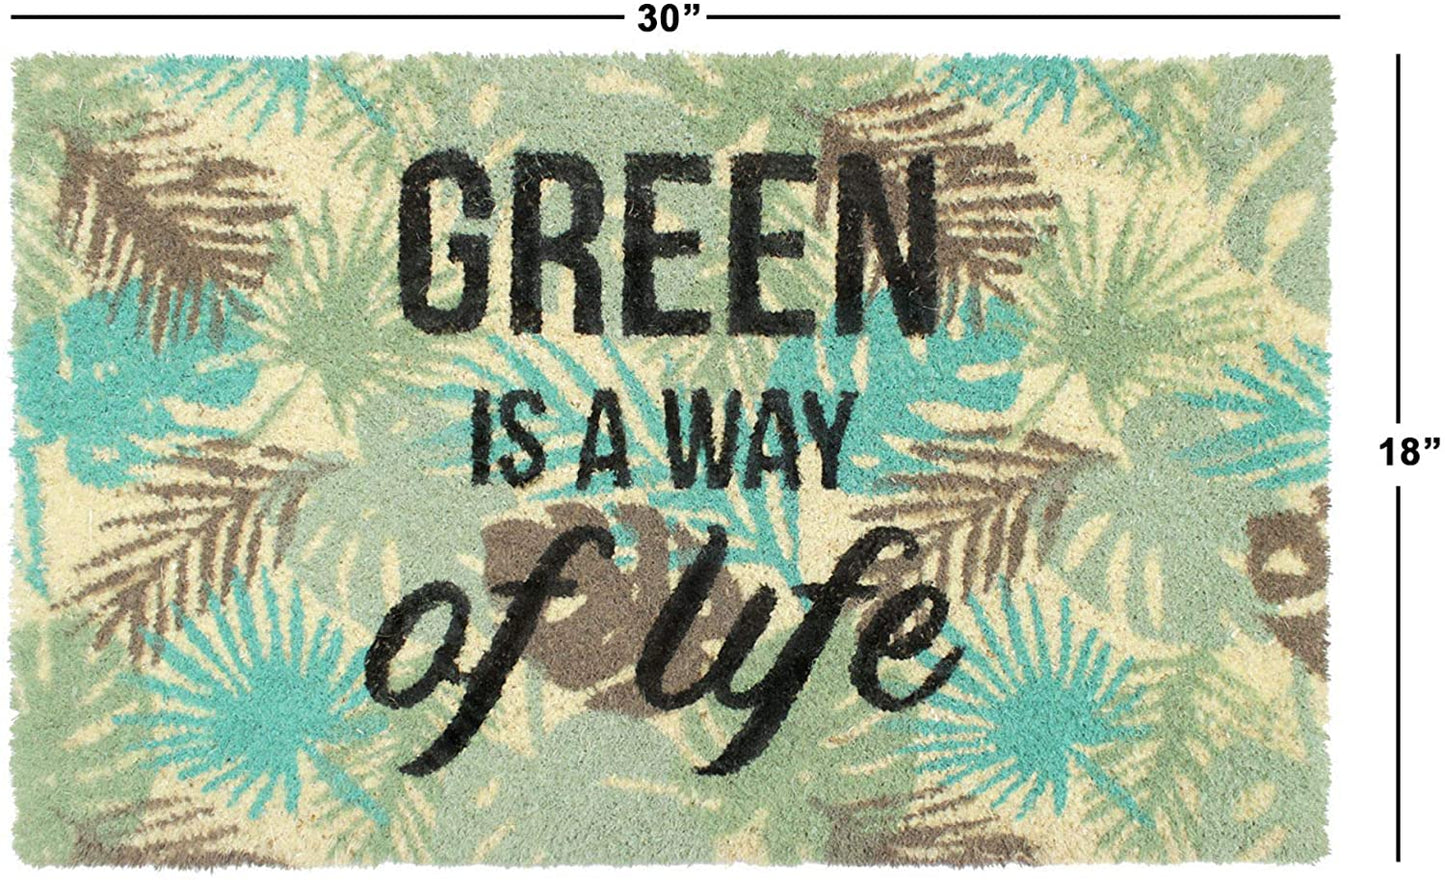 Green Way Of Life